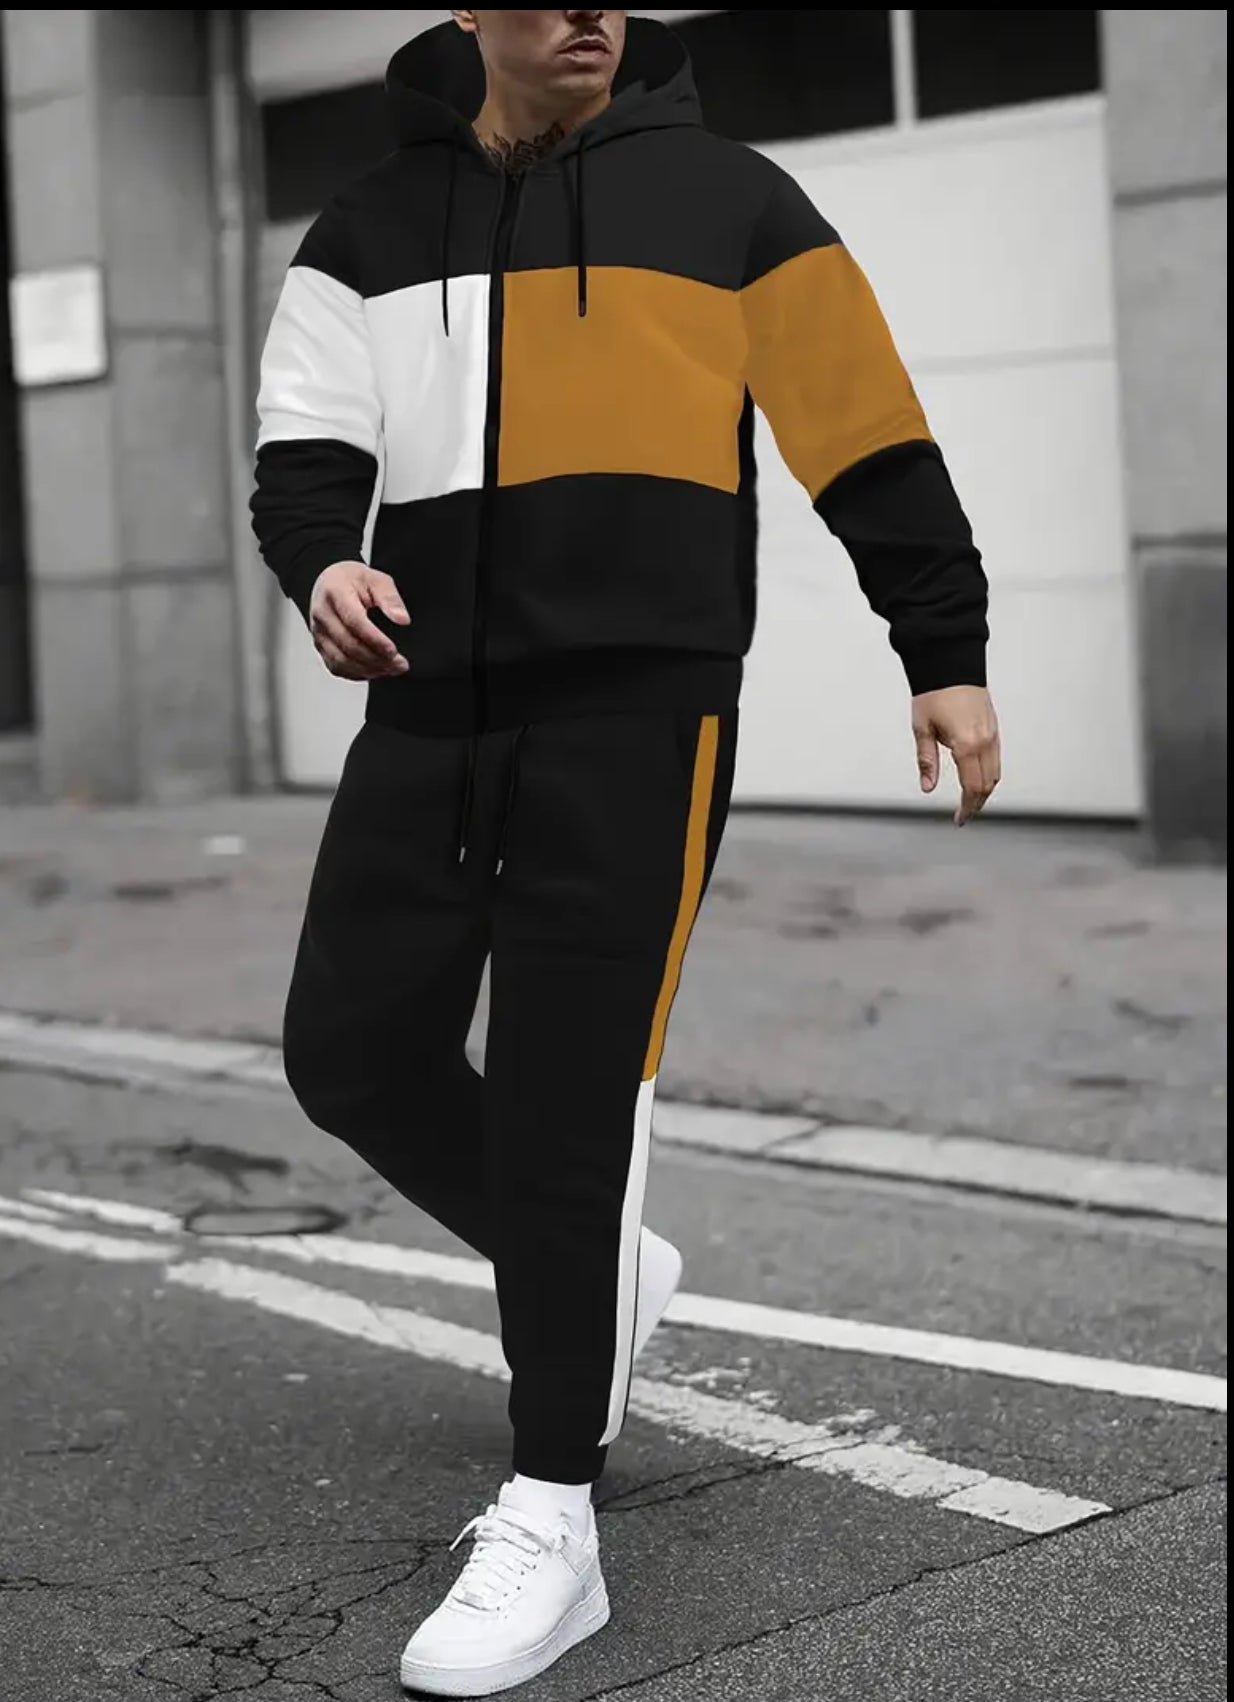 2pcs Men's Color Block Athletic Tracksuit Set, Pants & Sweatshirt